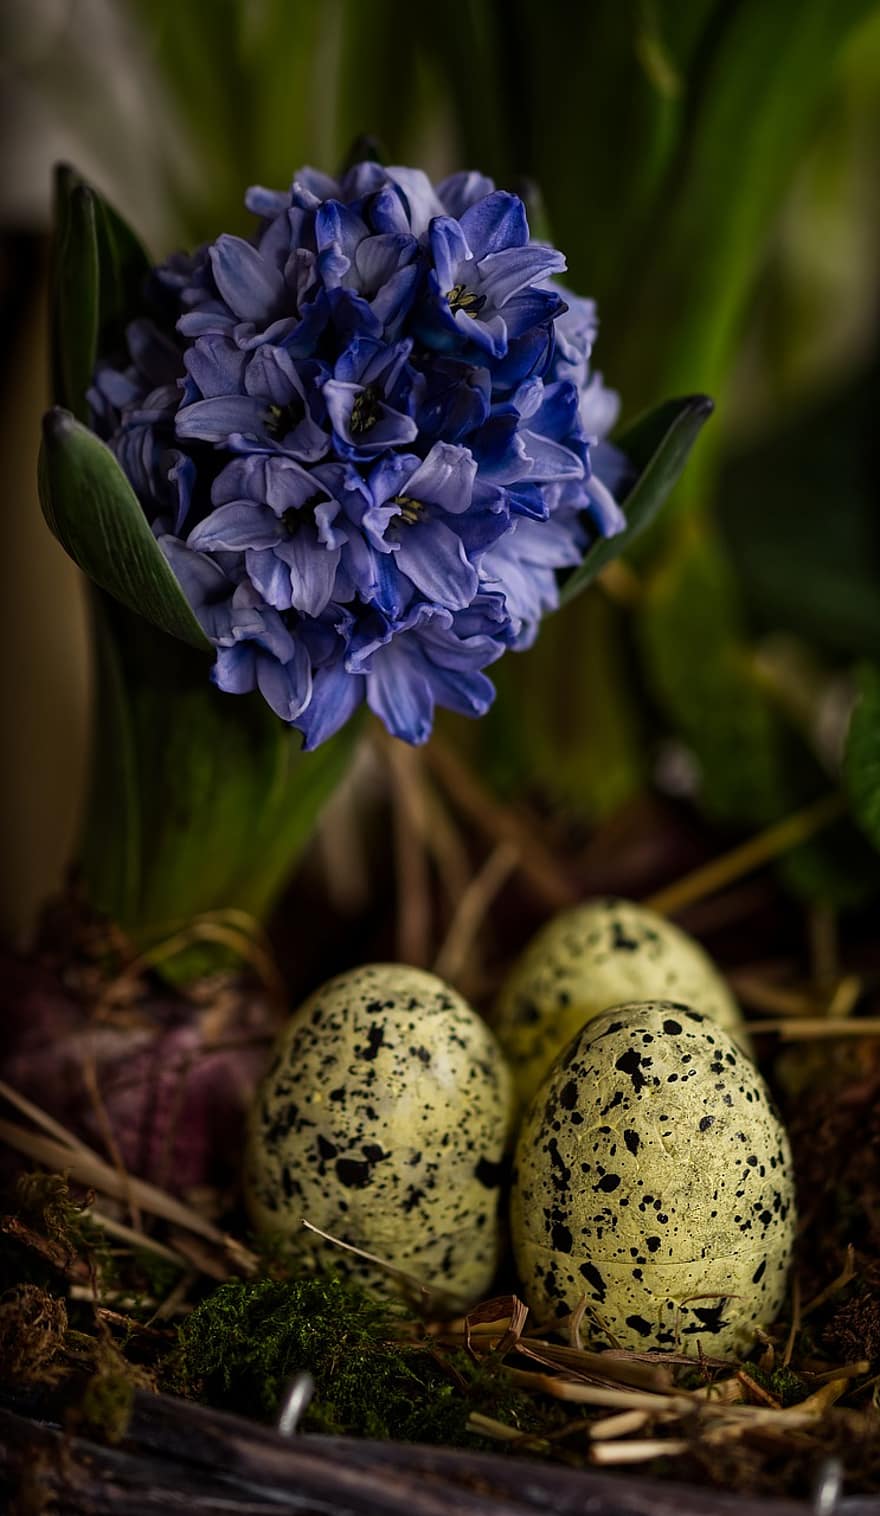 Πάσχα, αυγά, λουλούδια, φωλιά, Πασχαλινά αυγά, χρωματιστά αυγά, Πασχαλινή συλλογή, άνοιξη